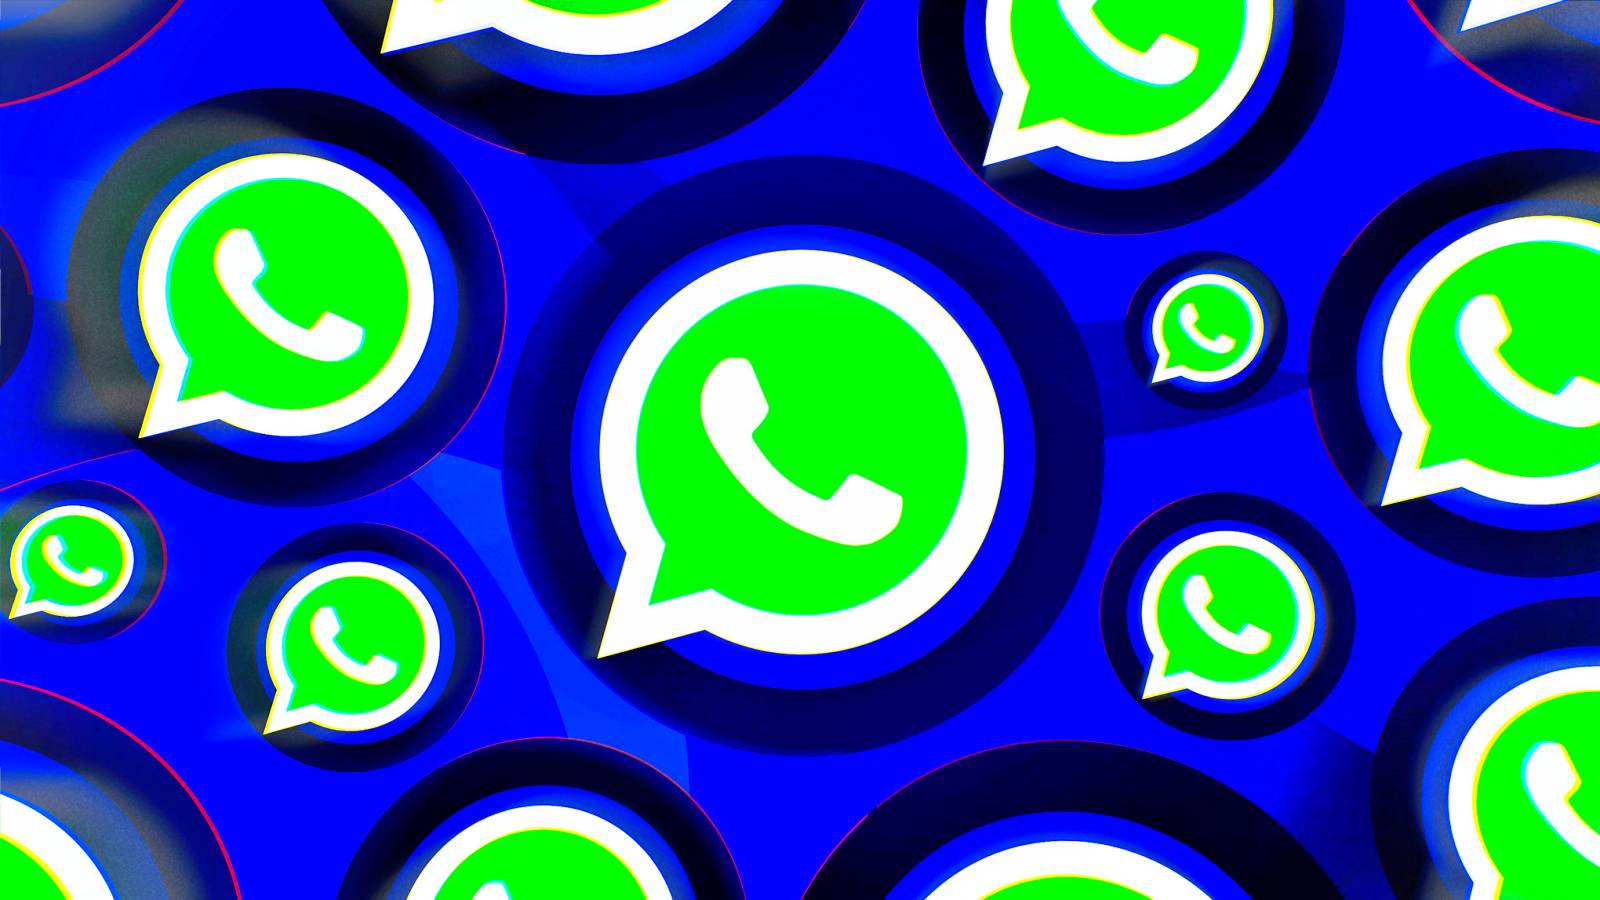 WhatsApp integroi sovellukseen uuden SAlaisen muutoksen